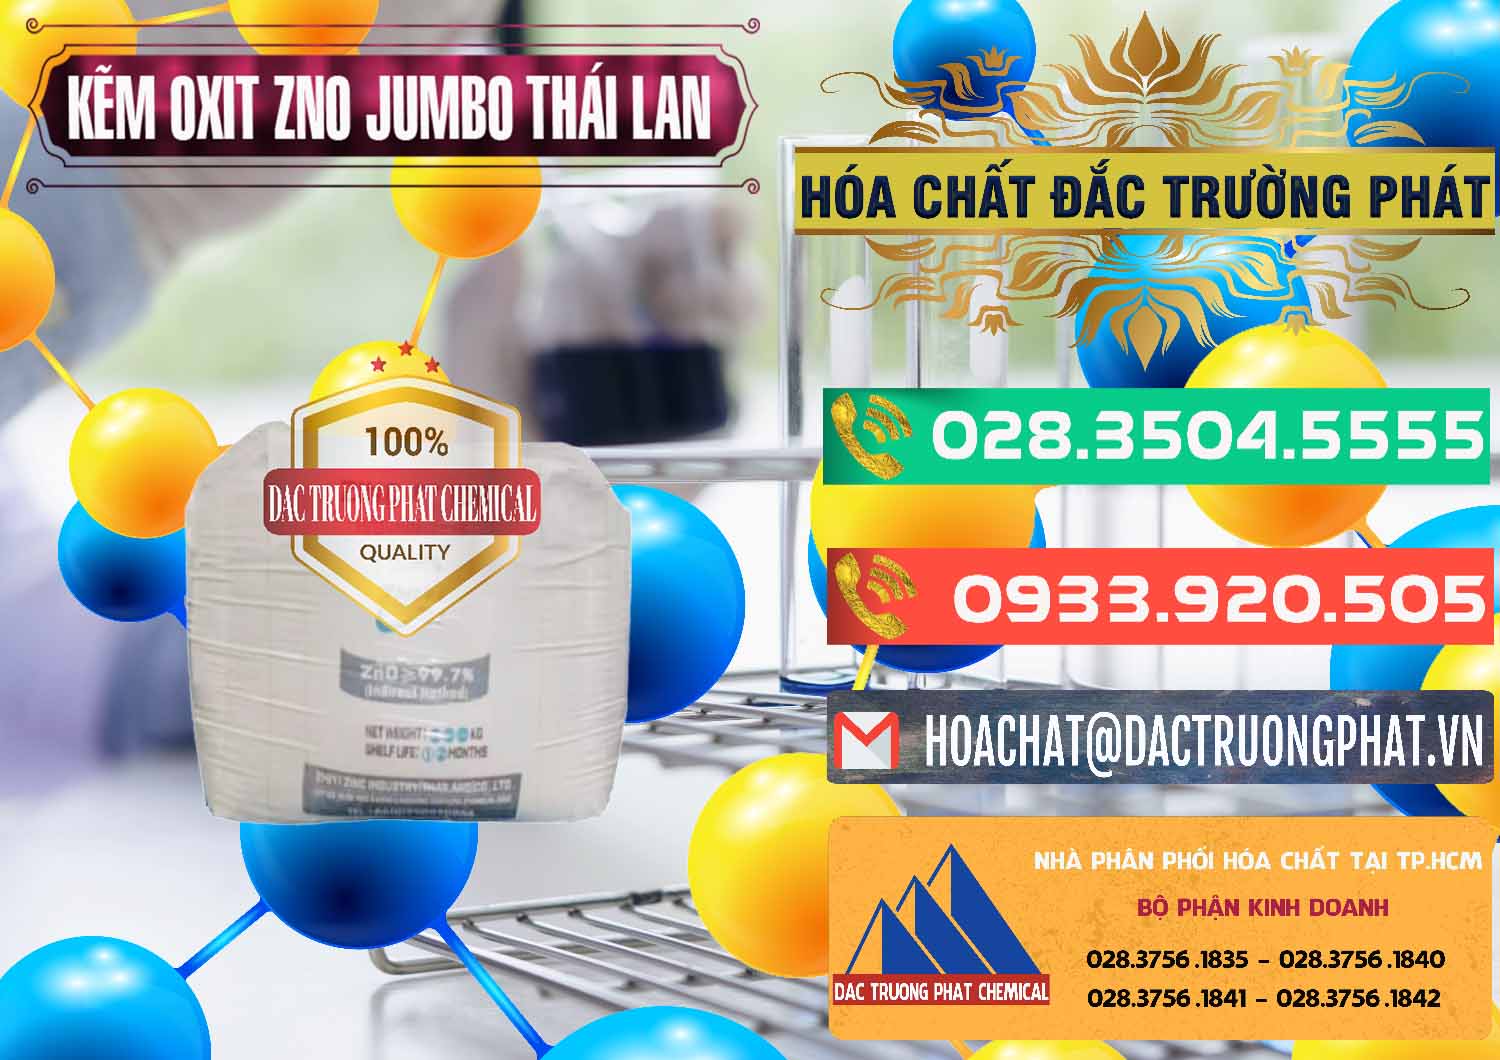 Cty chuyên phân phối và bán Zinc Oxide - Bột Kẽm Oxit ZNO Jumbo Bành Thái Lan Thailand - 0370 - Công ty cung cấp & phân phối hóa chất tại TP.HCM - congtyhoachat.com.vn